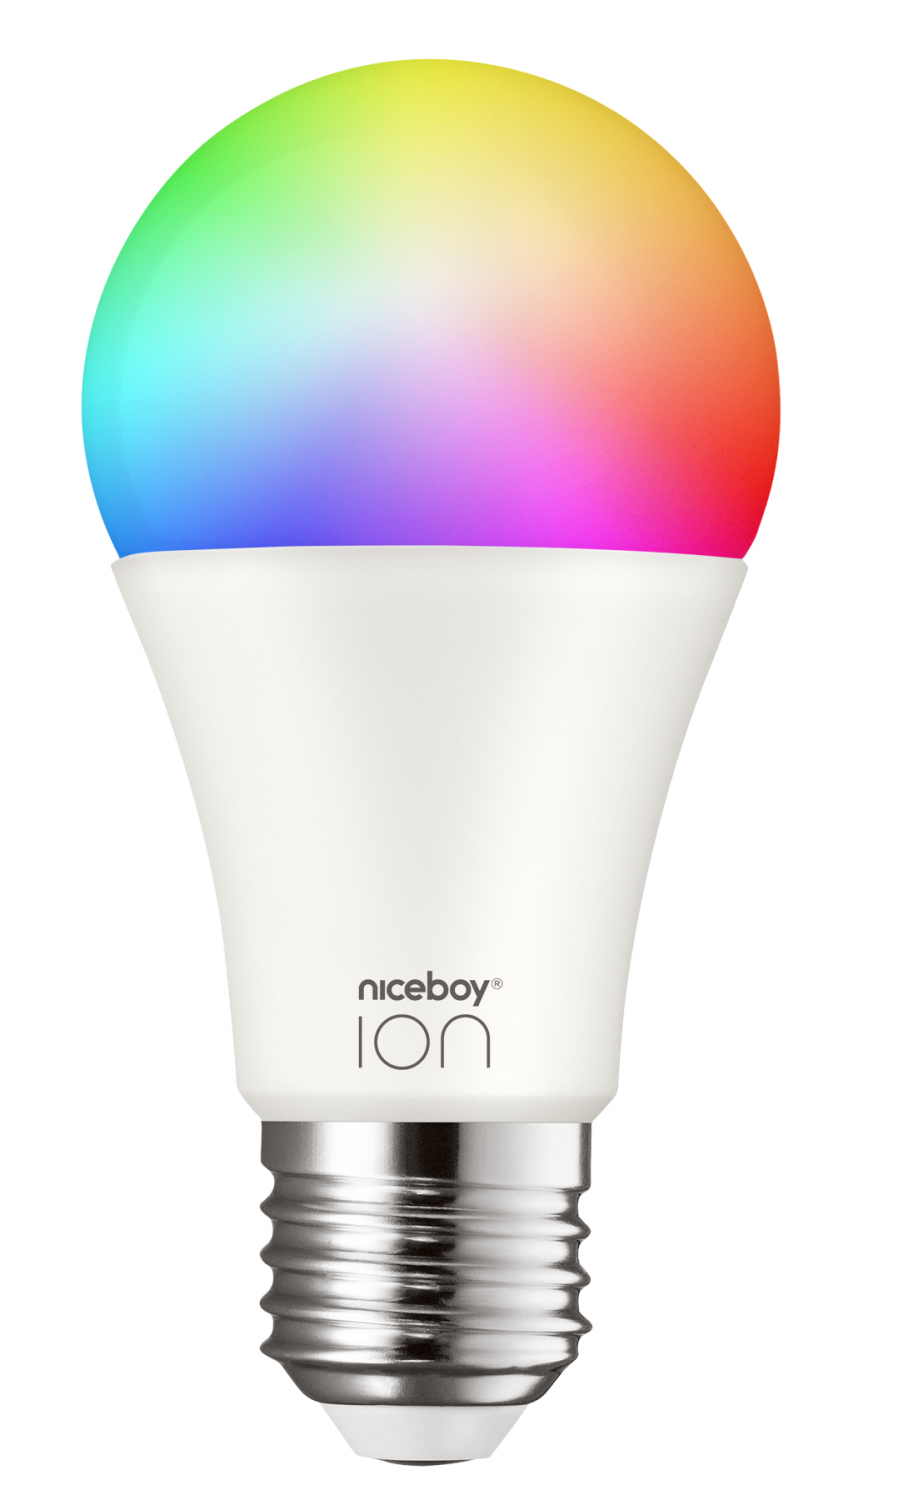 Niceboy ION SmartBulb RGB E27 9W